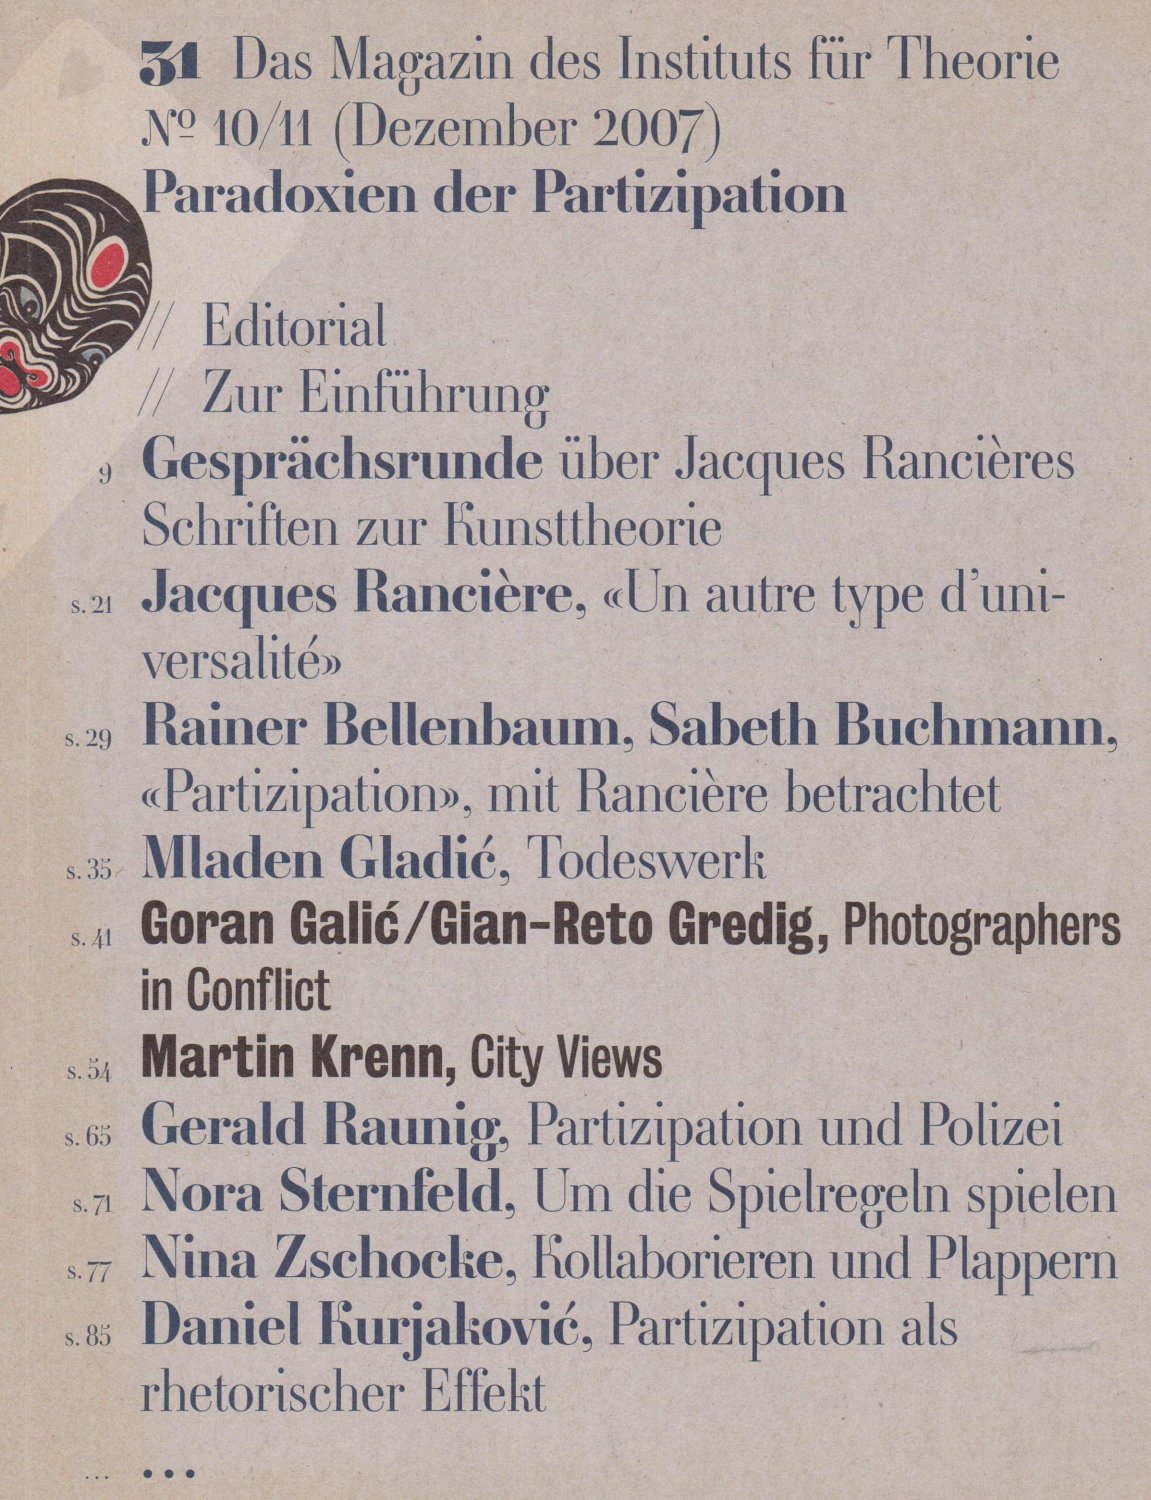 31 - Das Magazin des Instituts für Theorie:  Paradoxien der Partizipation. No 10/11 (Dezember 2007). 